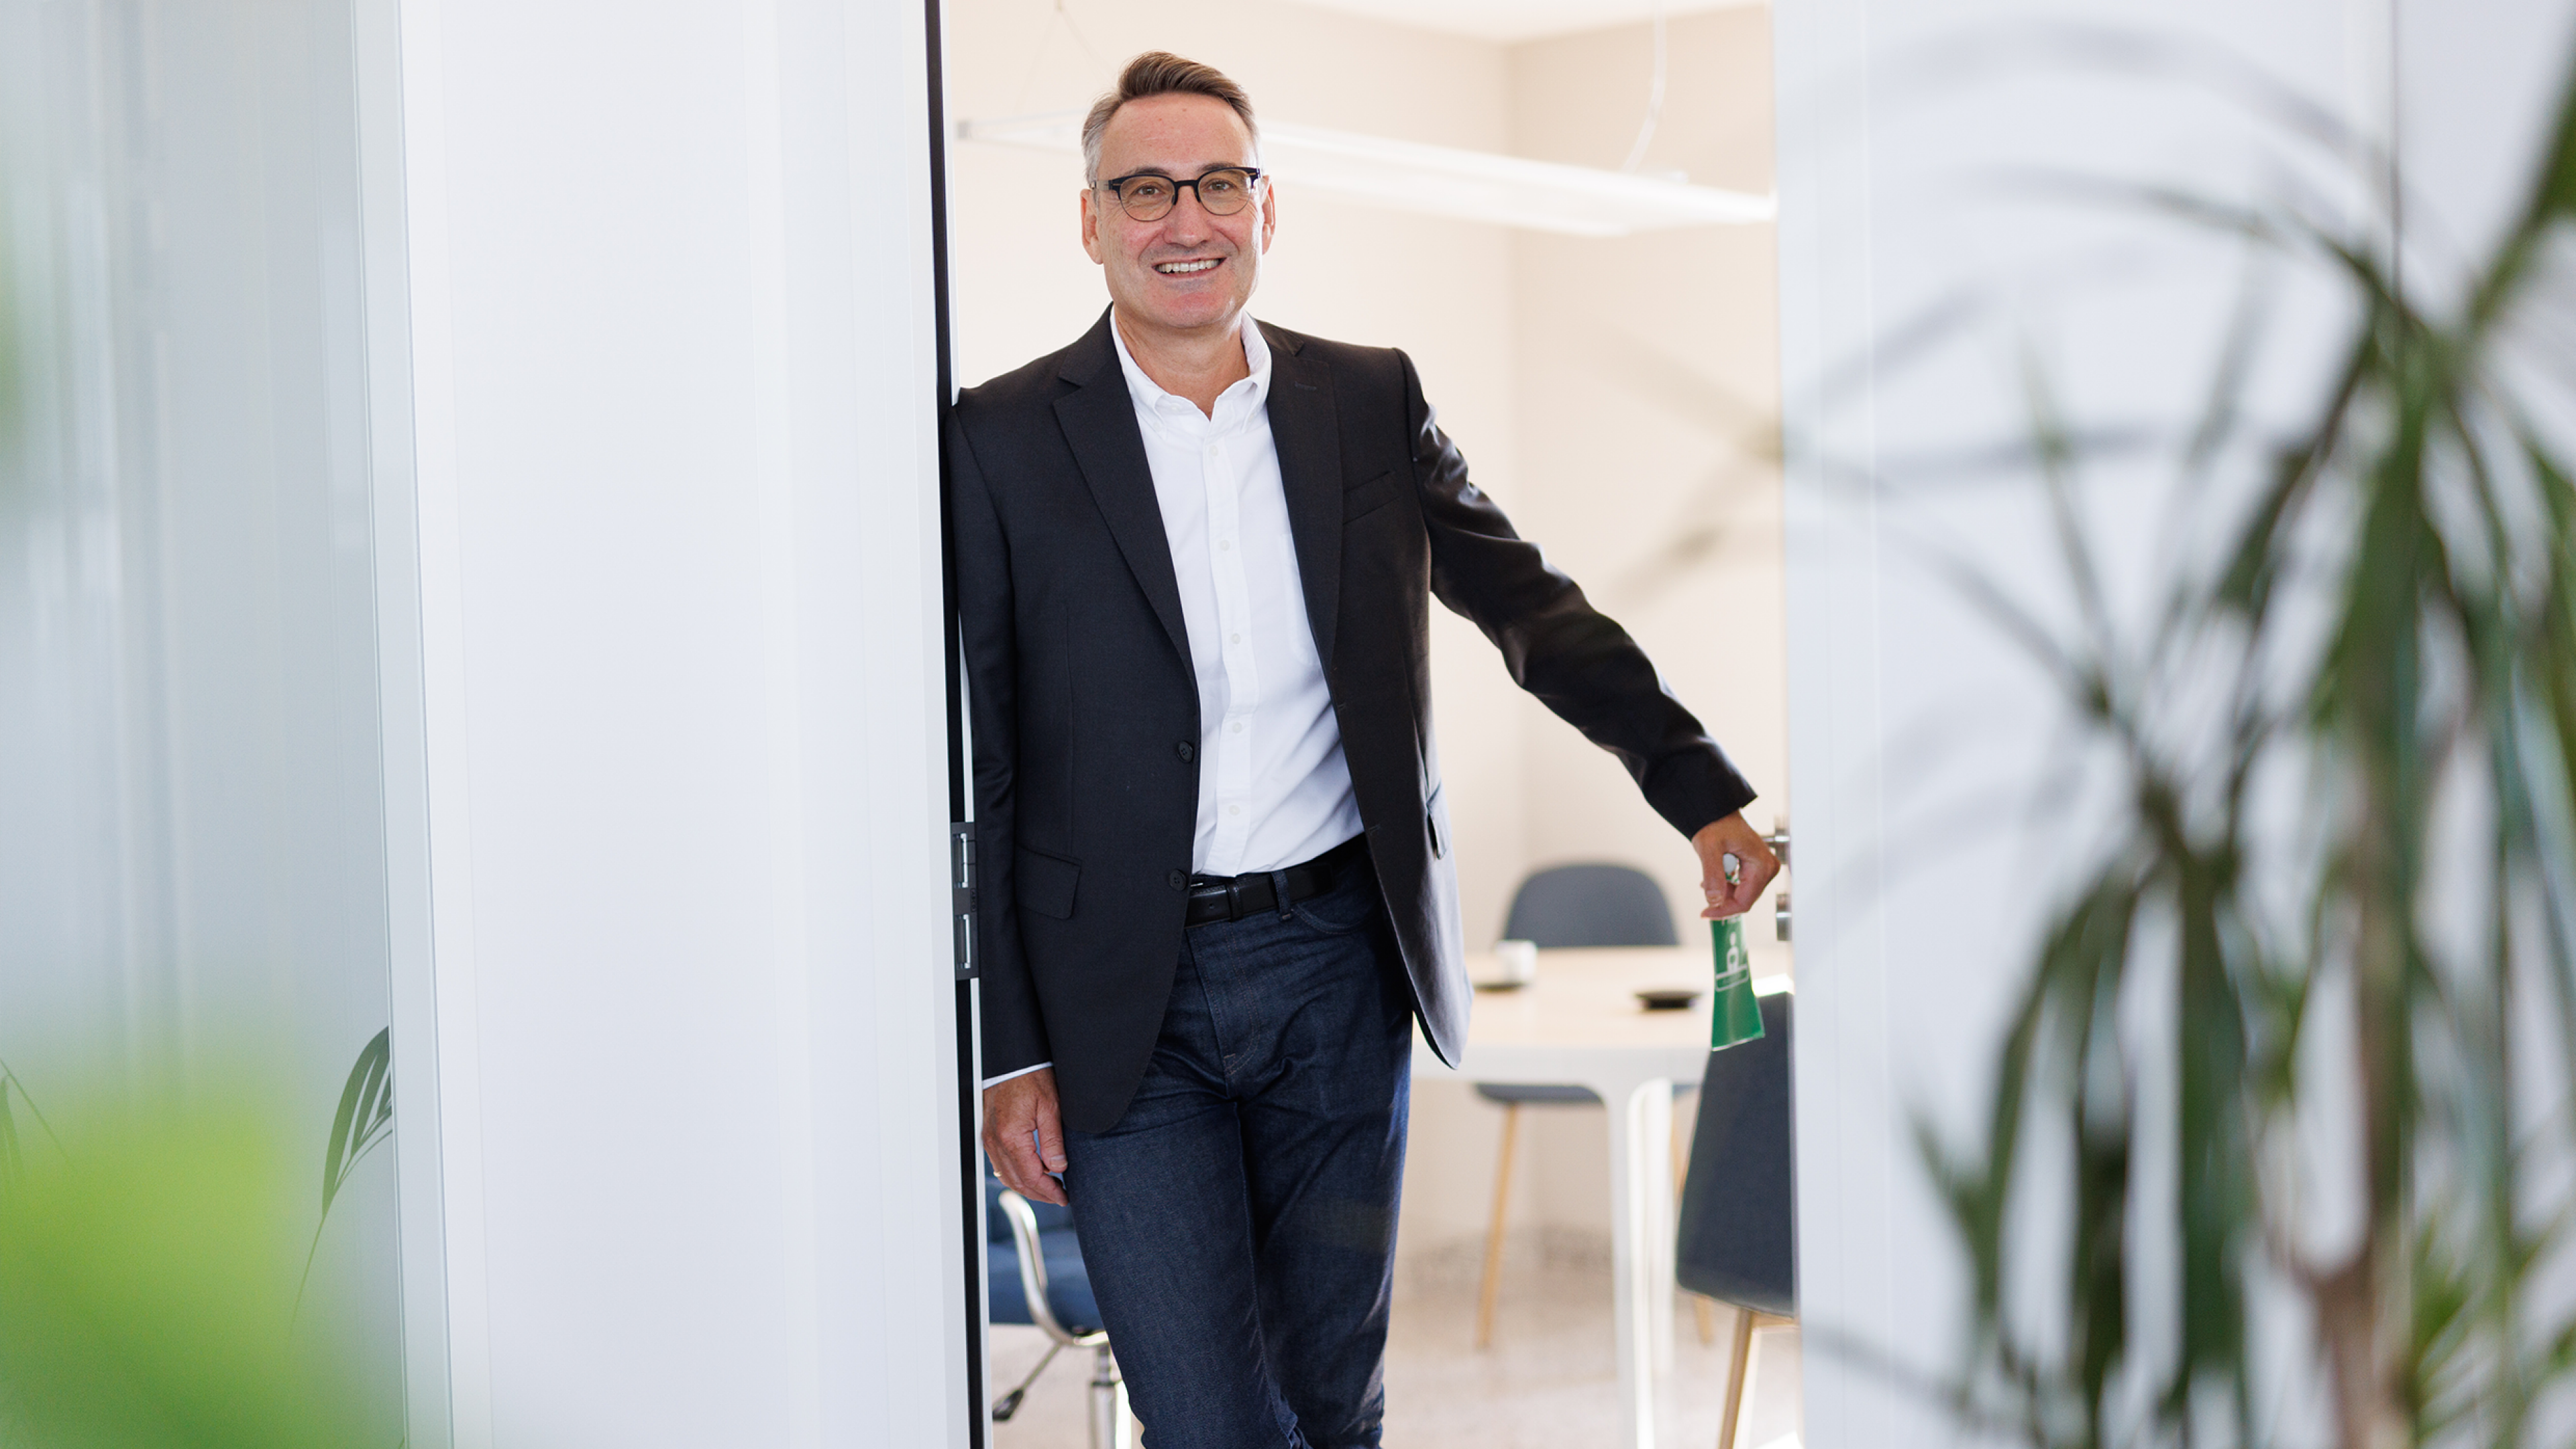 Ein Mann namens Luiggino Torrigiani, ein Start-up-Berater, lehnt entspannt an der Tür eines modernen Büros. Er strahlt Selbstbewusstsein und Erfahrung aus und scheint bereit zu sein, jungen Unternehmern mit Rat und Tat zur Seite zu stehen.